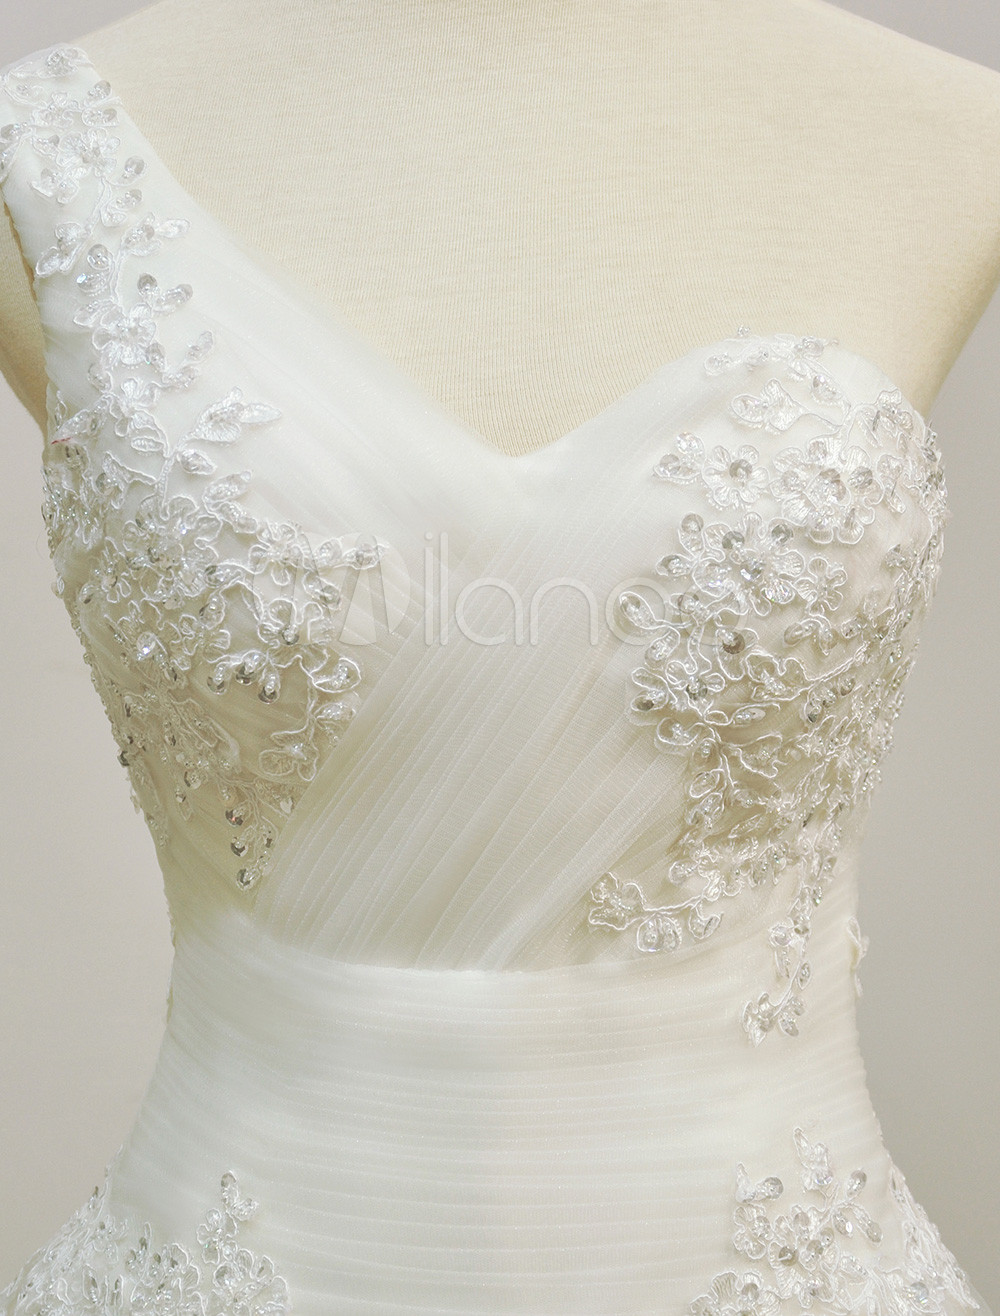 Elegant Ivory Beading One Shoulder A Line Wedding Dress For Bride 